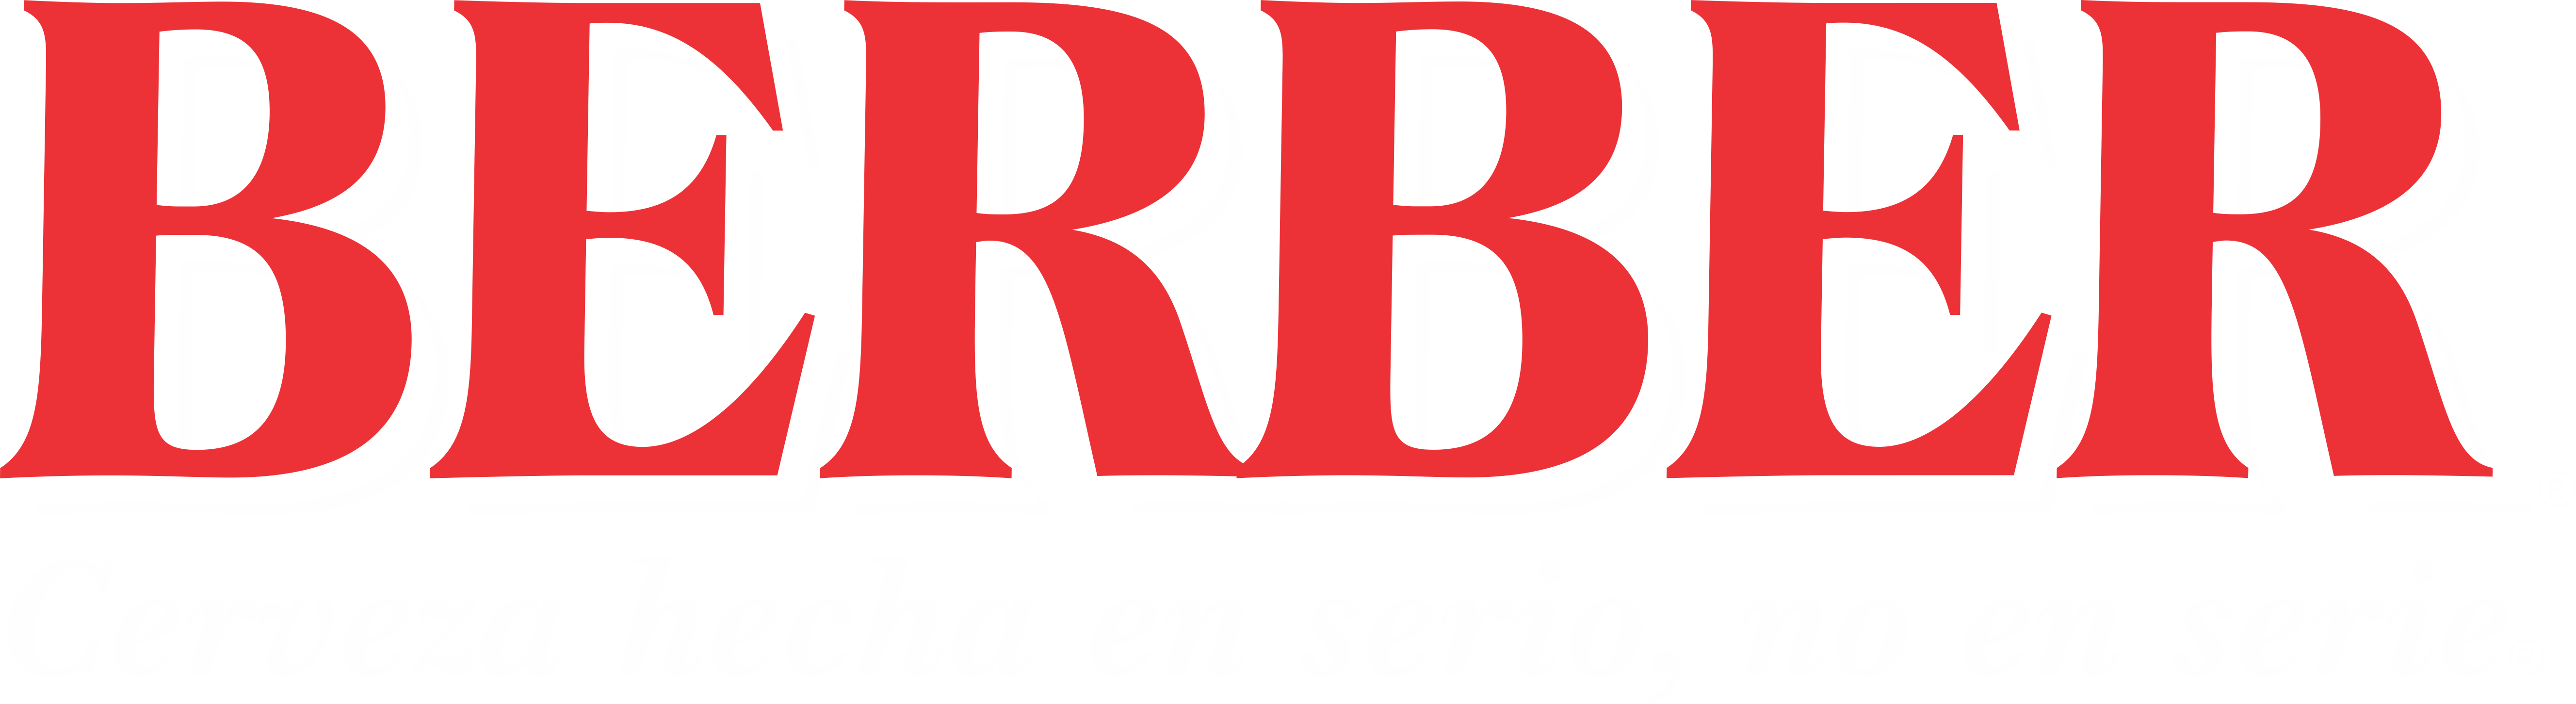 logo-berber